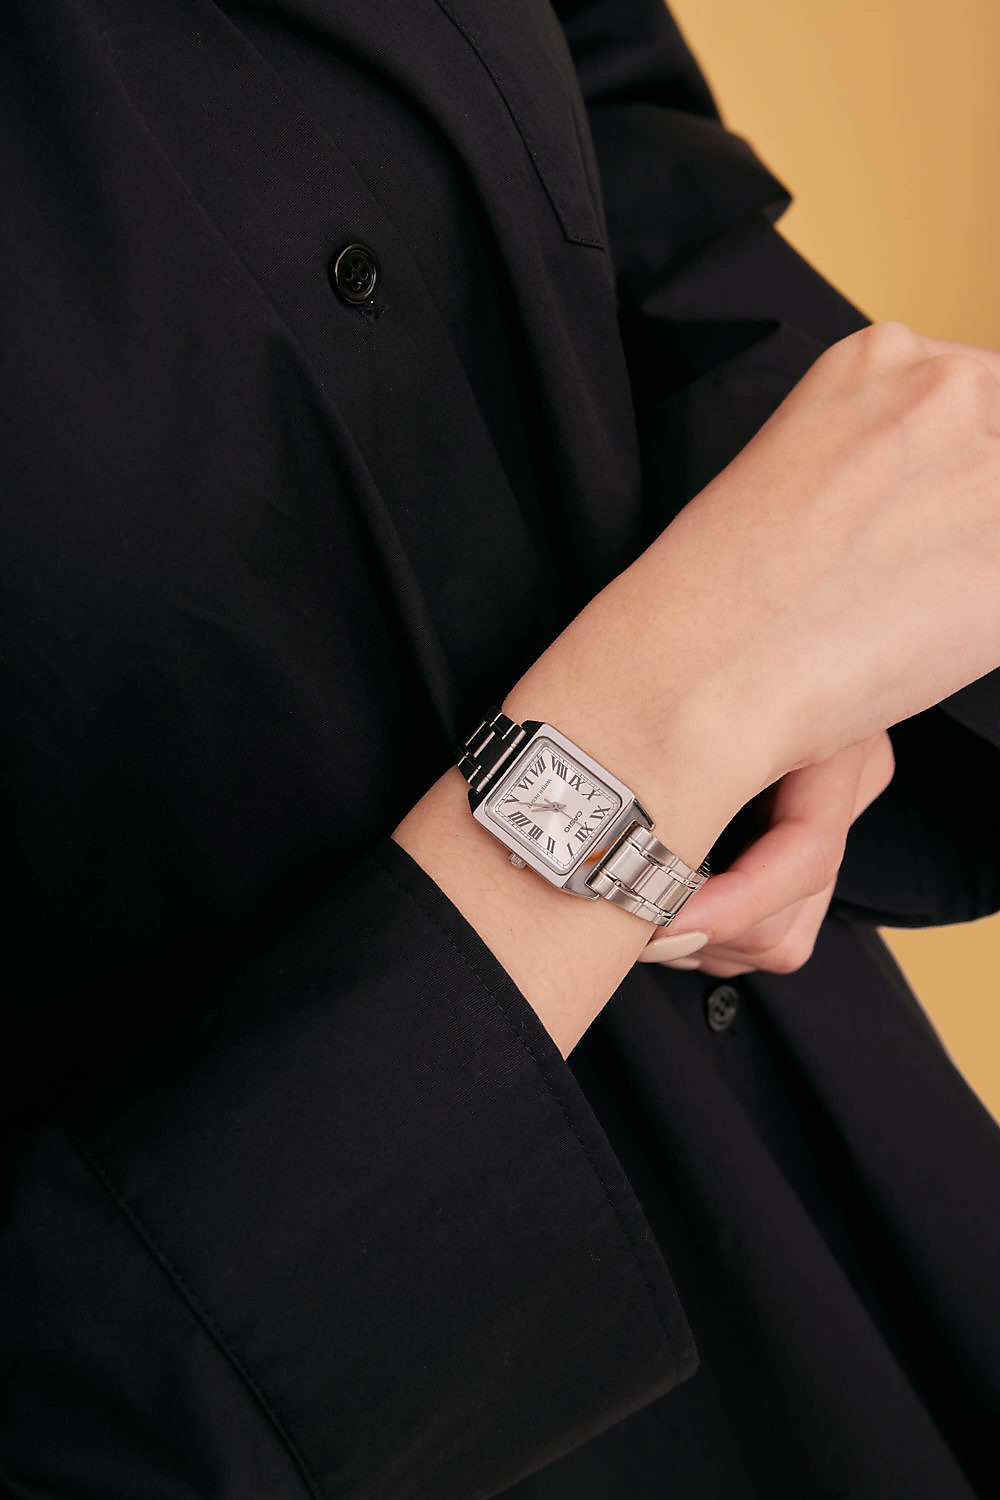 Eco安珂,韓國飾品,韓國手錶,韓國CASIO手錶,個性手錶,CASIO手錶,金屬錶帶手錶,卡西歐手錶